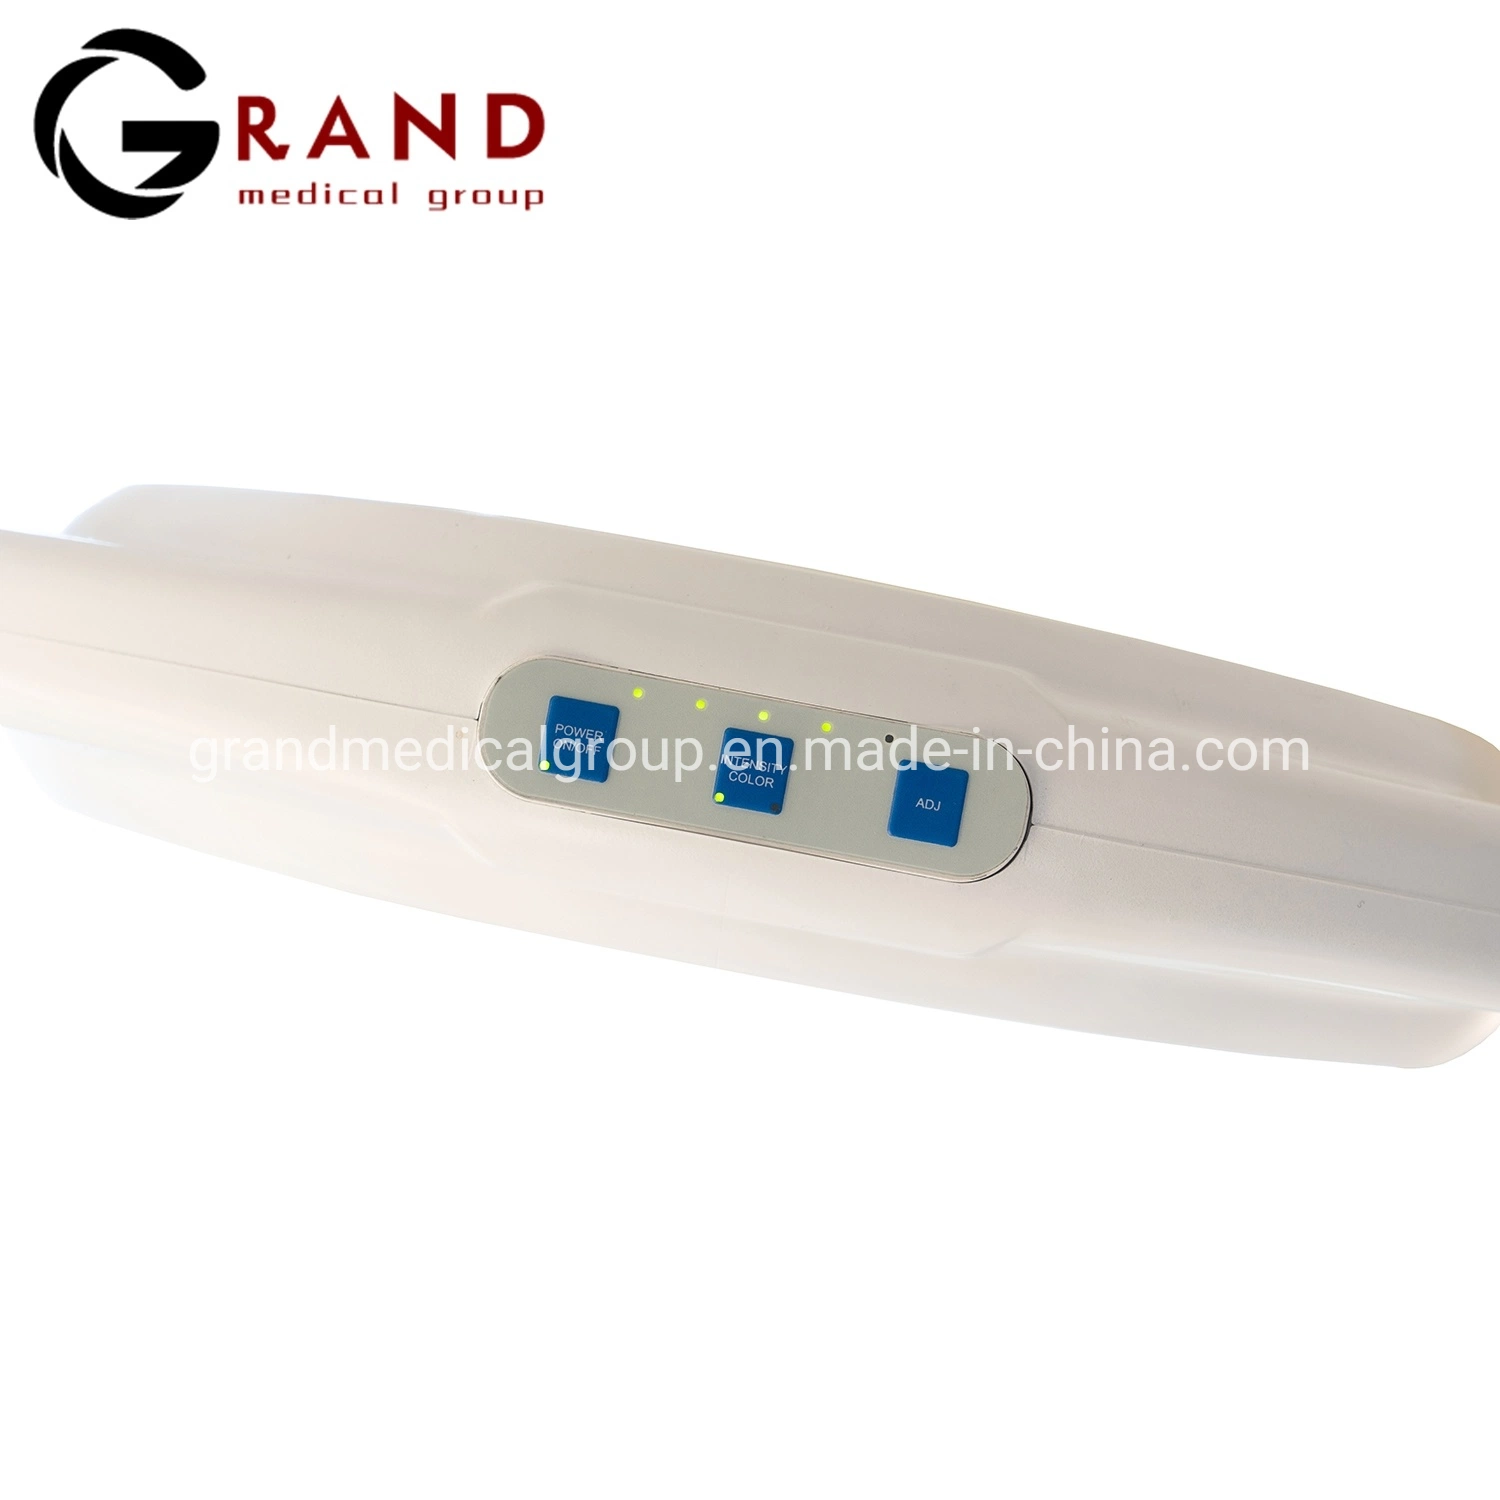 Высококачественный светодиодный портативный настенный потолочный светильник CE FDA Утвержденная цена на хирургическое освещение для обследования Yde300